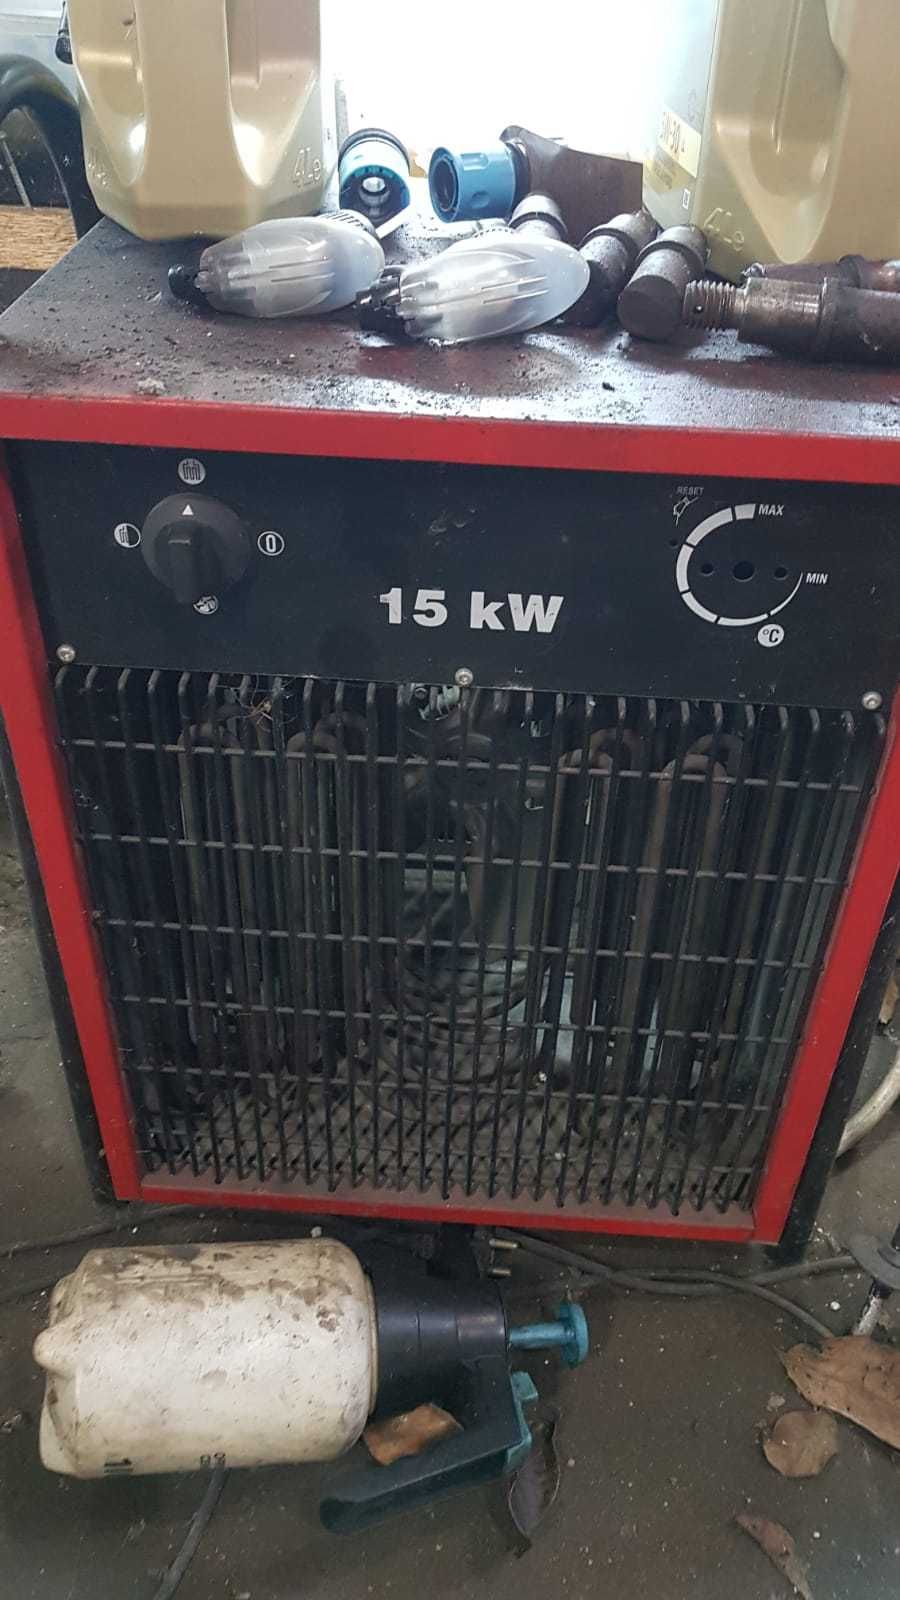 nagrzewnica elektryczna 18kW 18 kW Dania 15kW